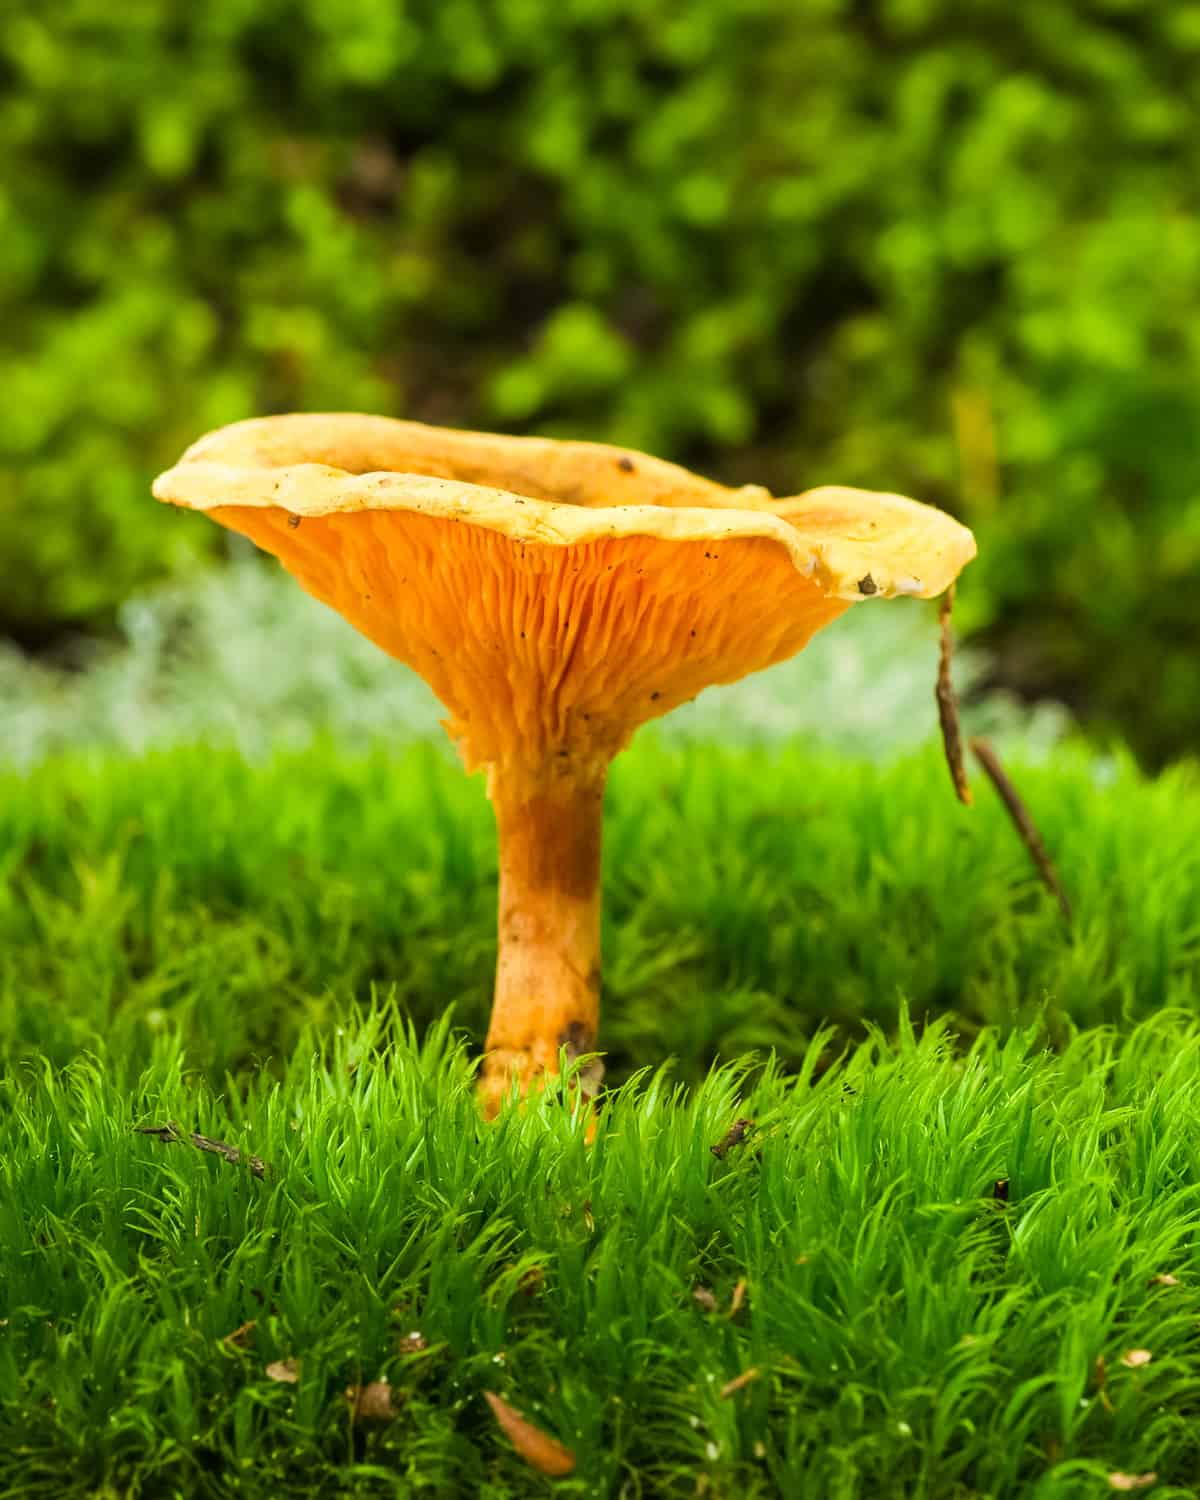 a false chanterelle mushroom growing in grass